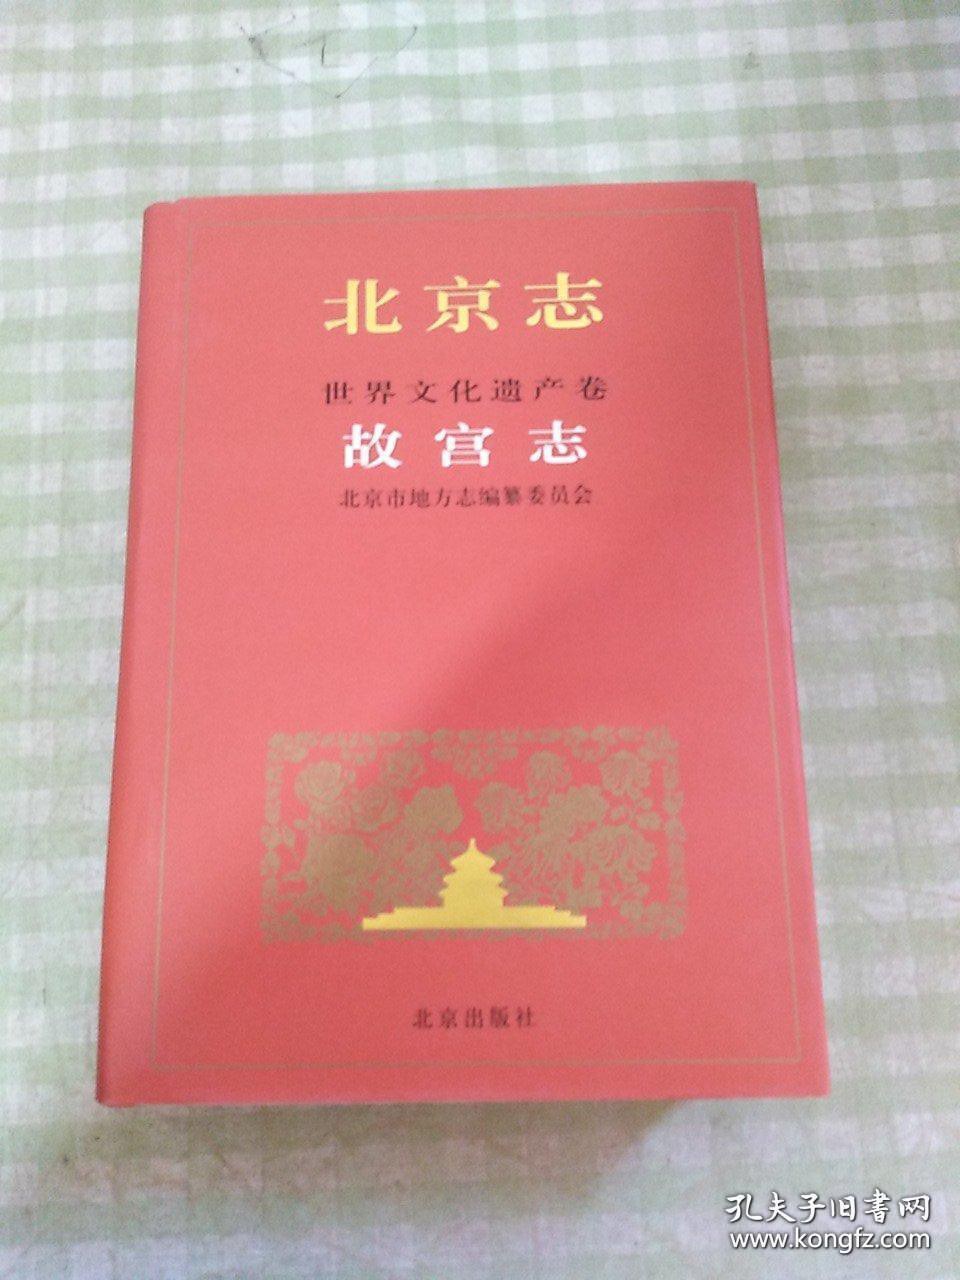 北京志 世界文化遗产卷 97B 故宫志